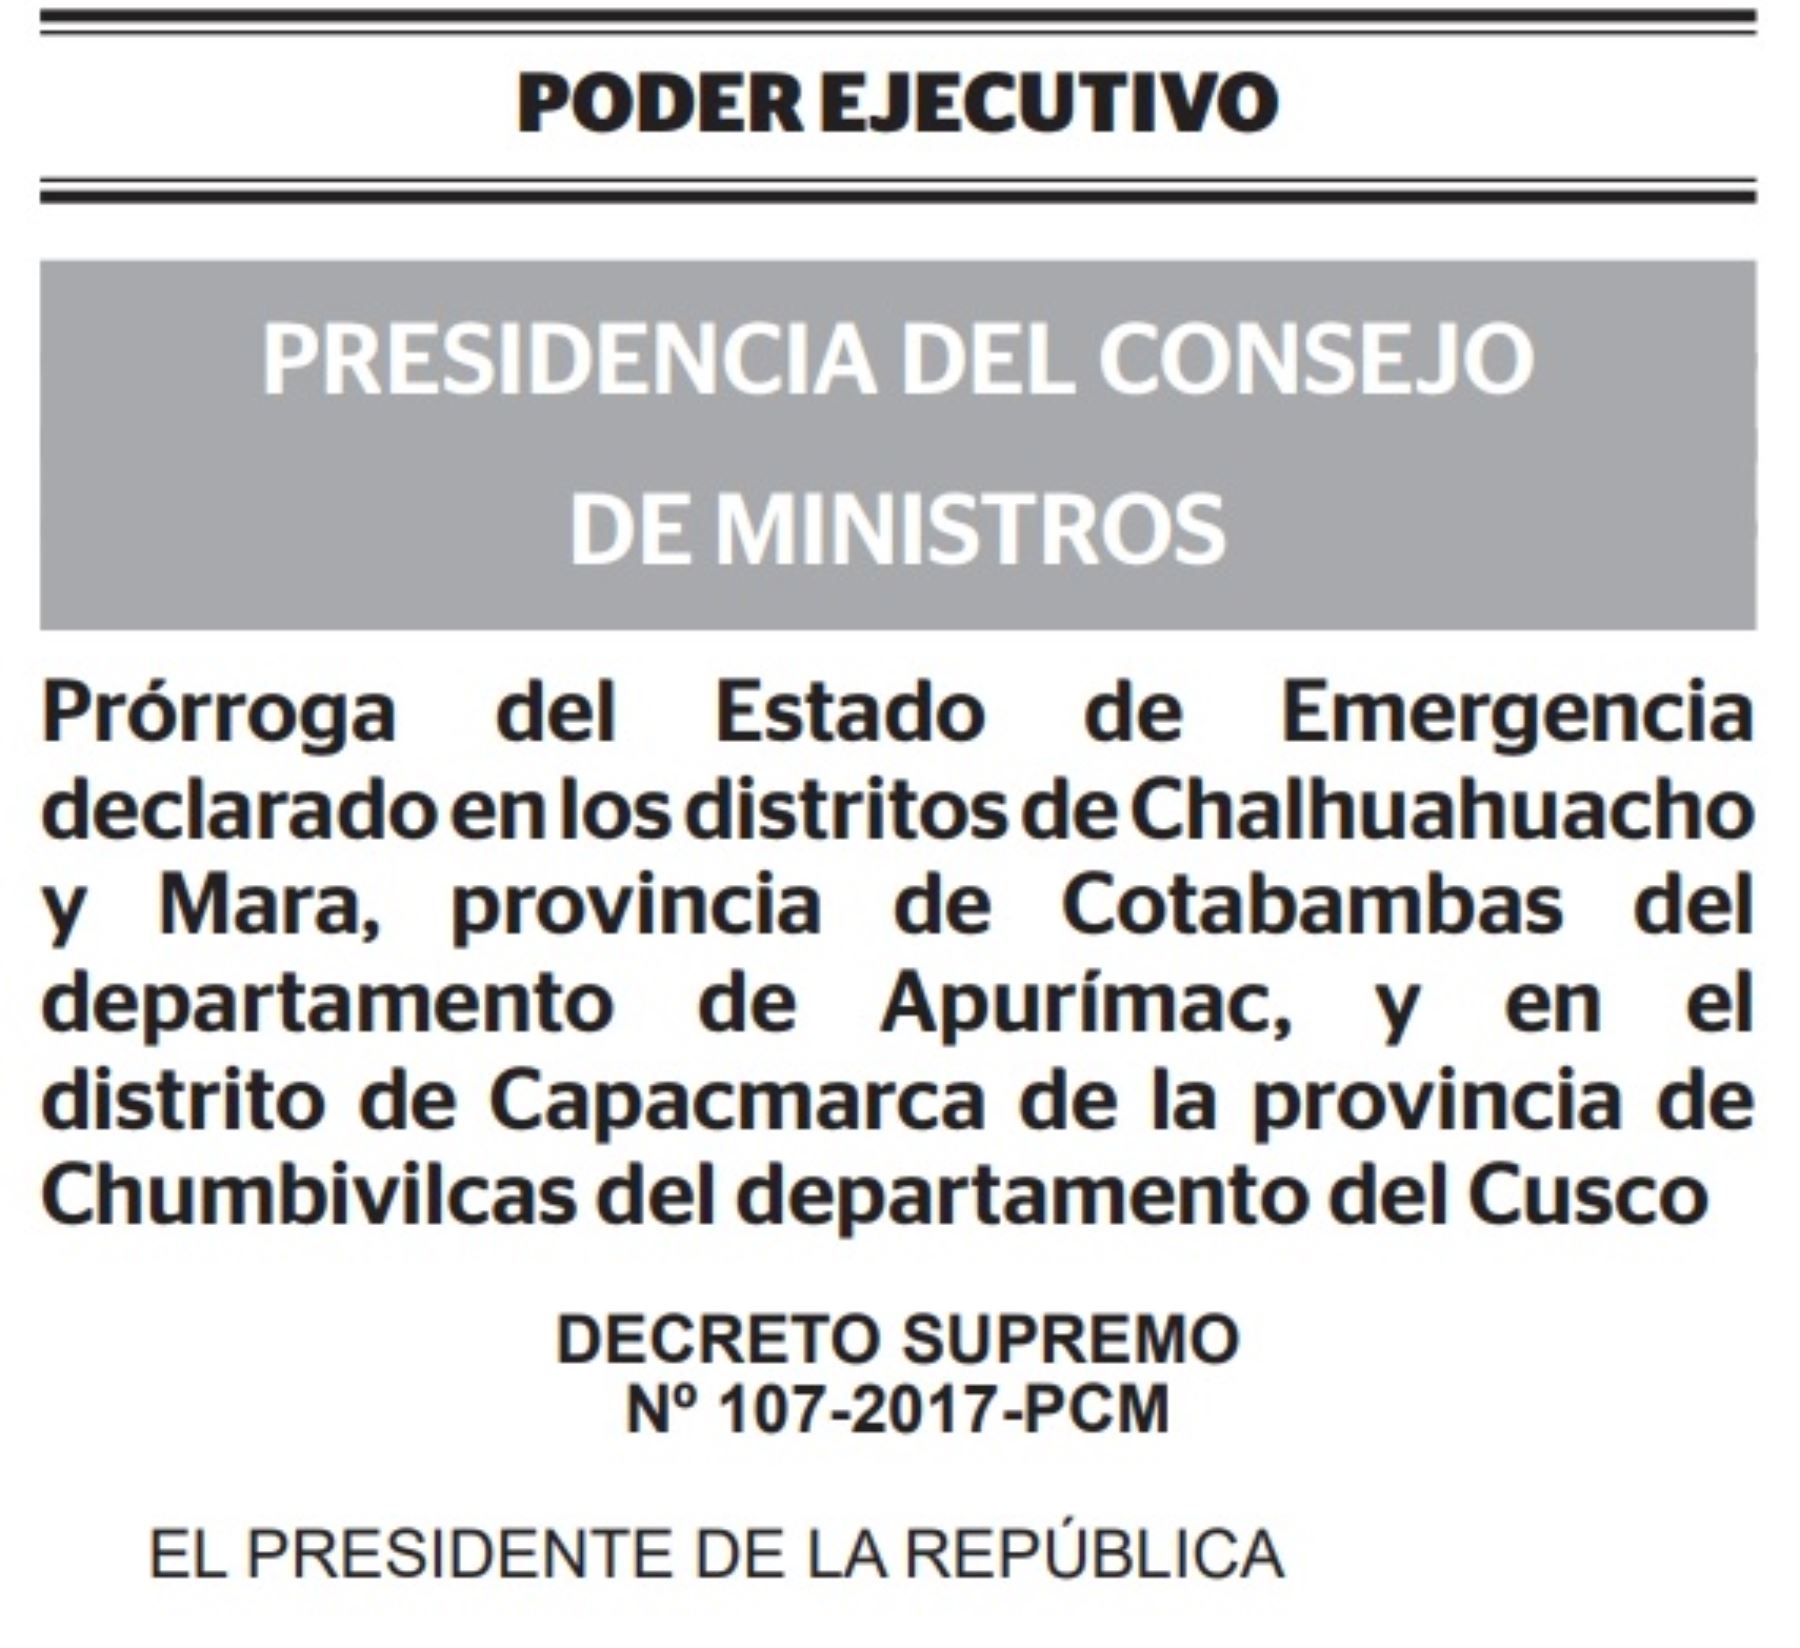 El Ejecutivo prorrogó el estado de emergencia declarado en los distritos de Chalhuahuacho y Mara, ubicados en la provincia de Cotabambas, región Apurímac, y en el distrito de Capacmarca, en la provincia de Chumbivilcas, región Cusco, y dispuso que la Policía Nacional del Perú mantenga el control del orden interno con el apoyo de las Fuerzas Armadas.